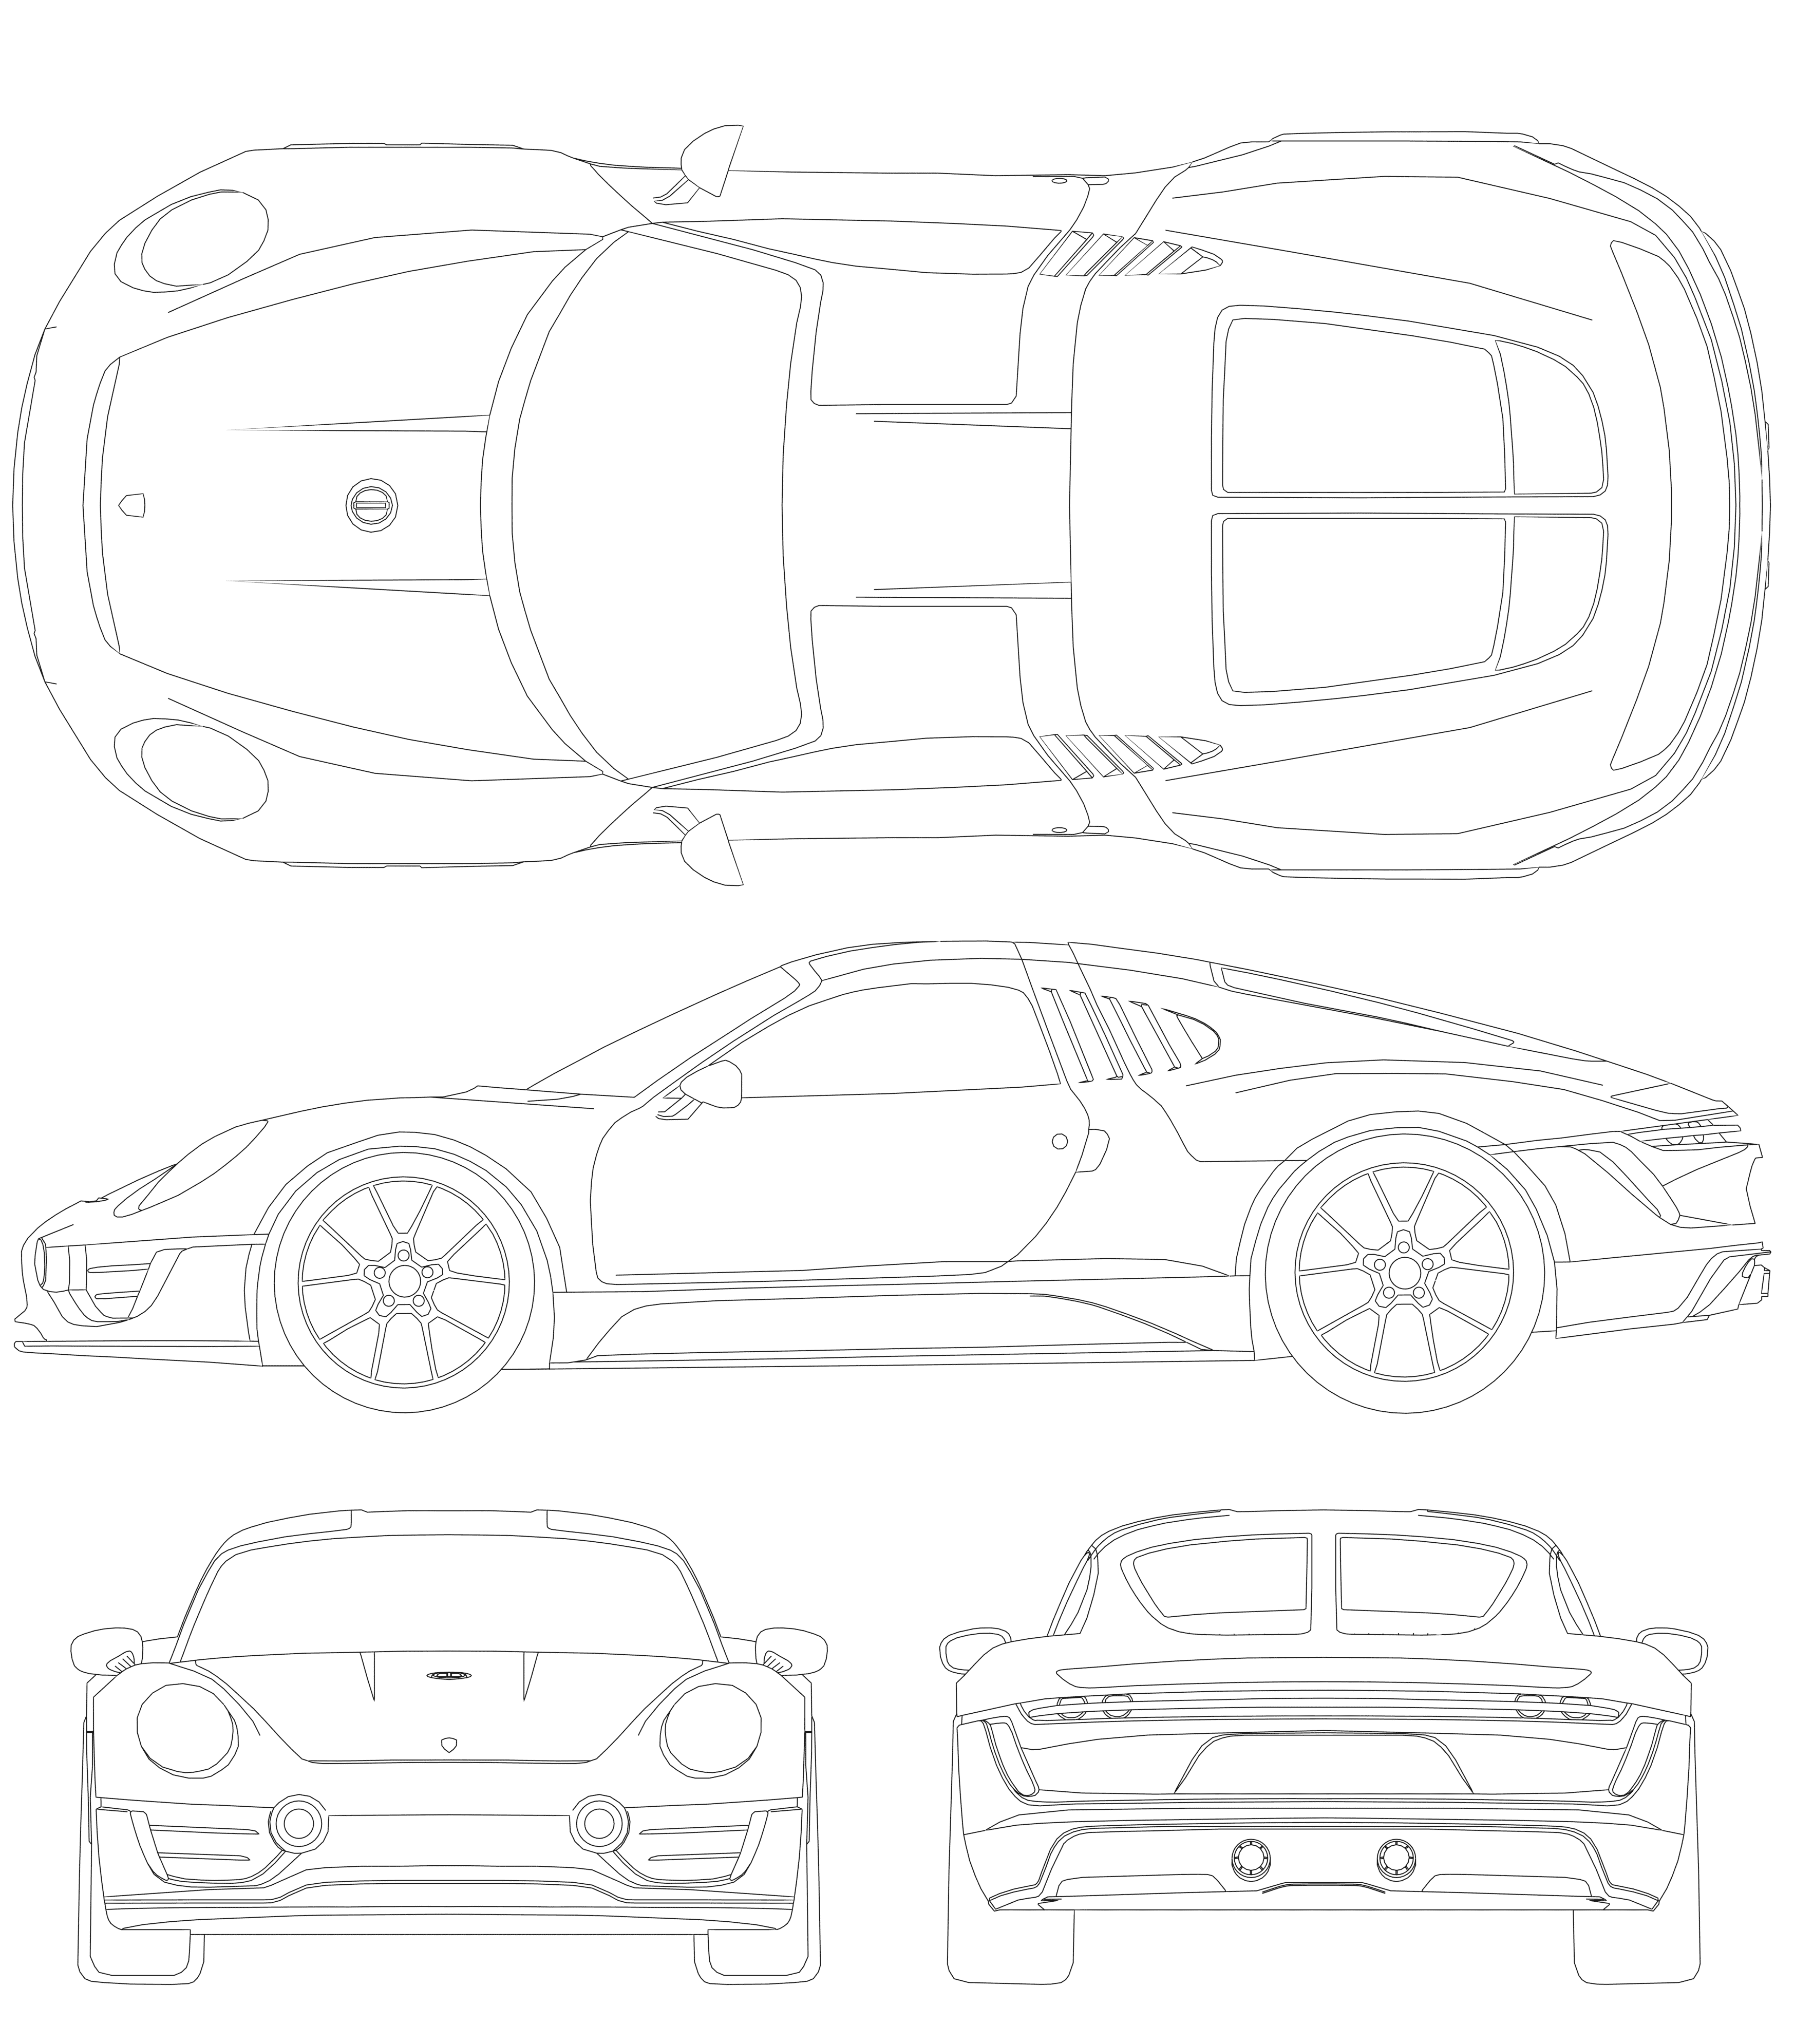 Porsche Le Mans Living Legend blueprint